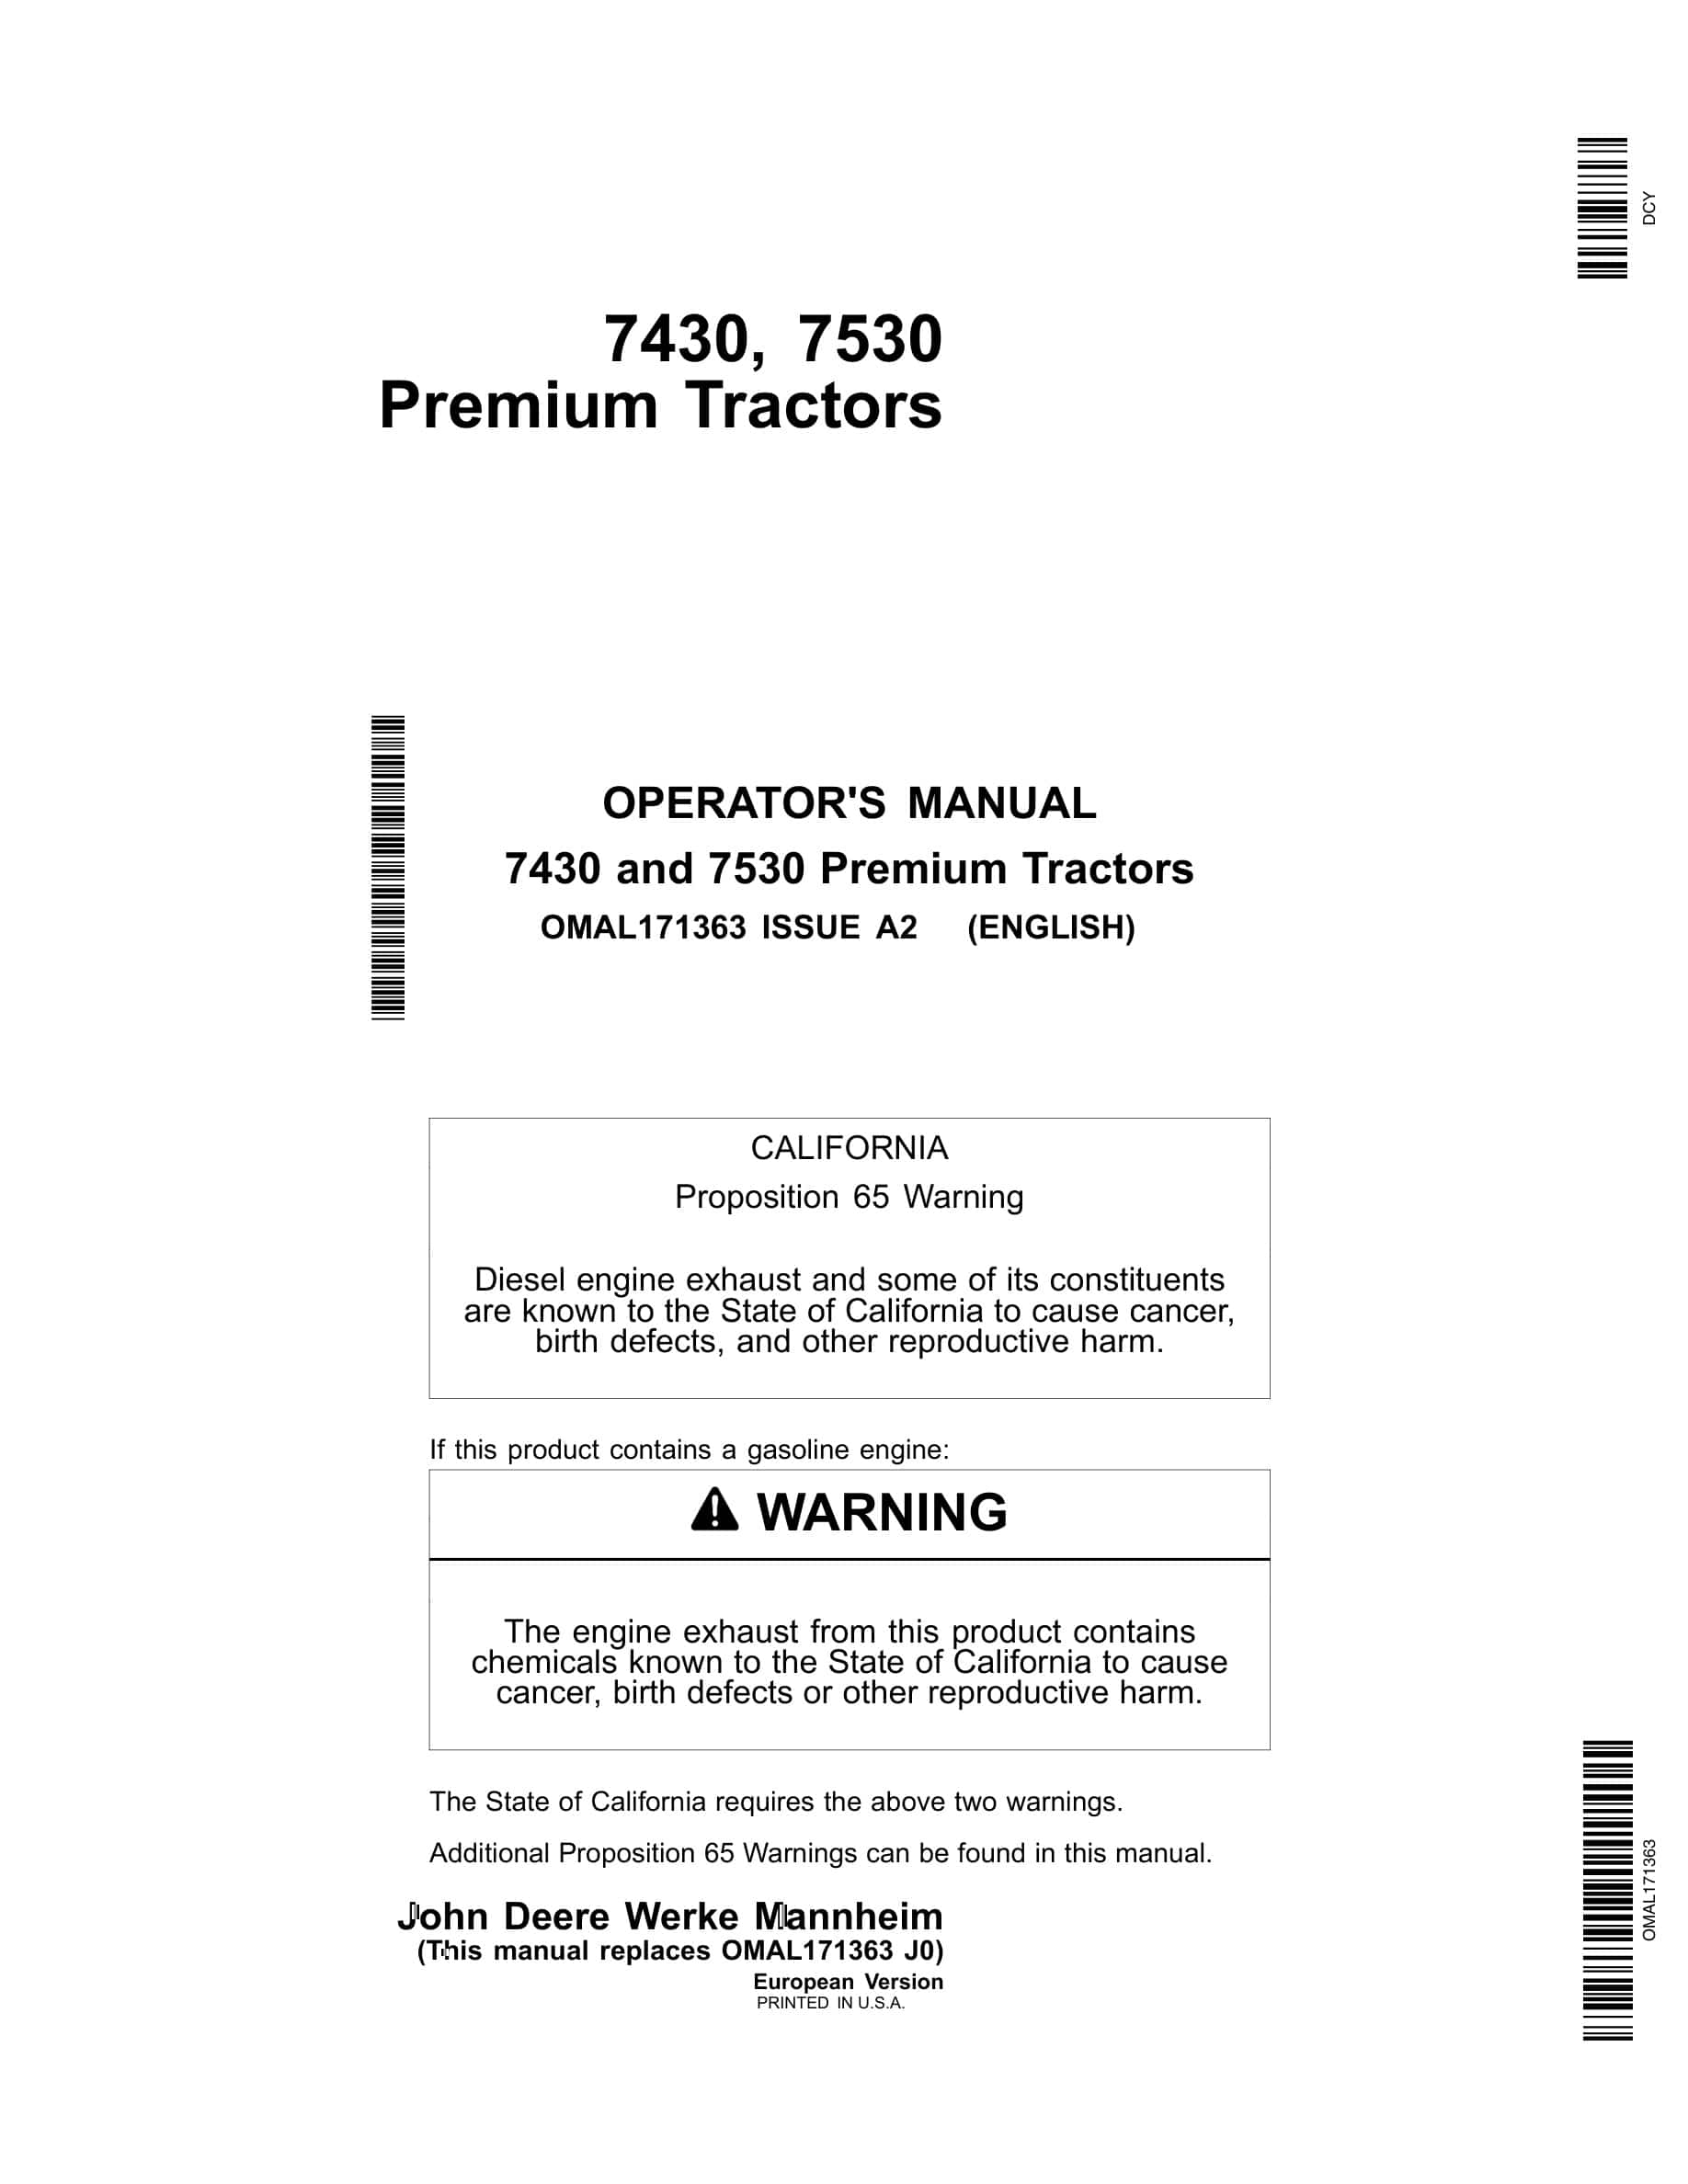 John Deere 7430 And 7530 Premium Tractors Operator Manuals OMAL171363-1